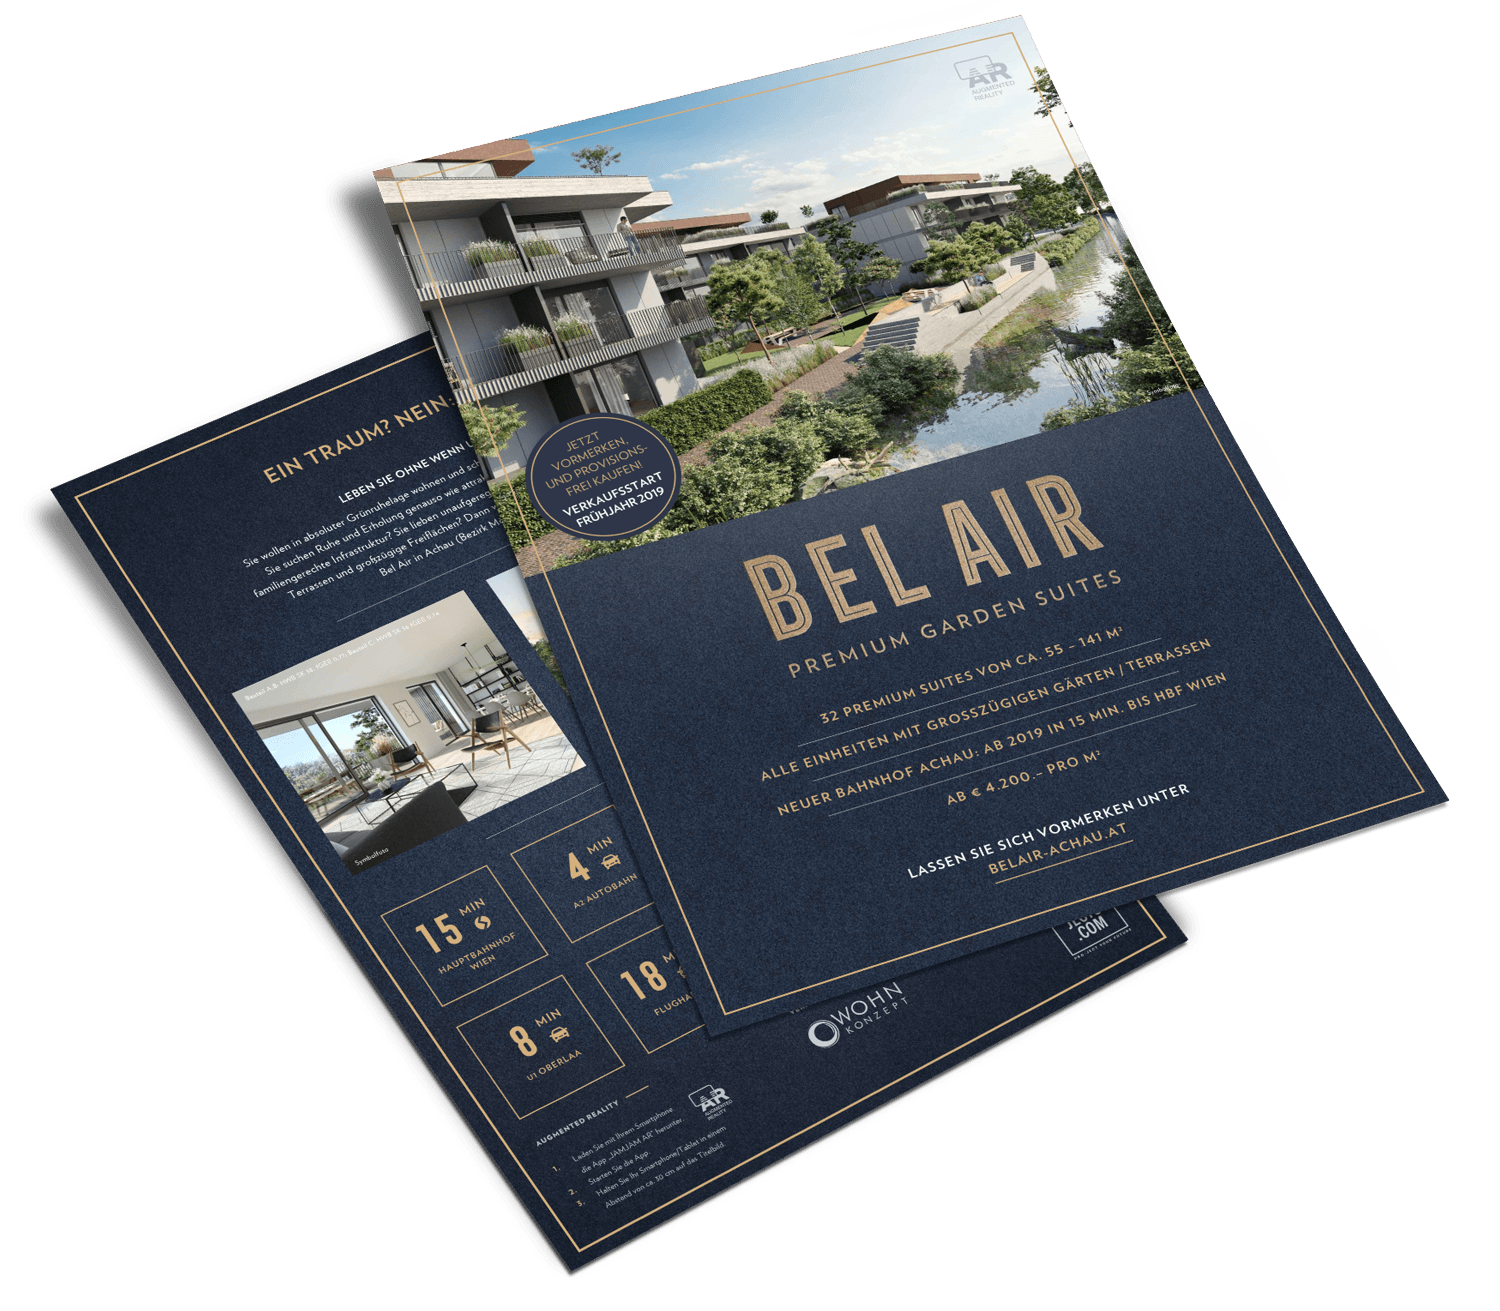 Bel Air Premium Garden Suites - Flyer Design